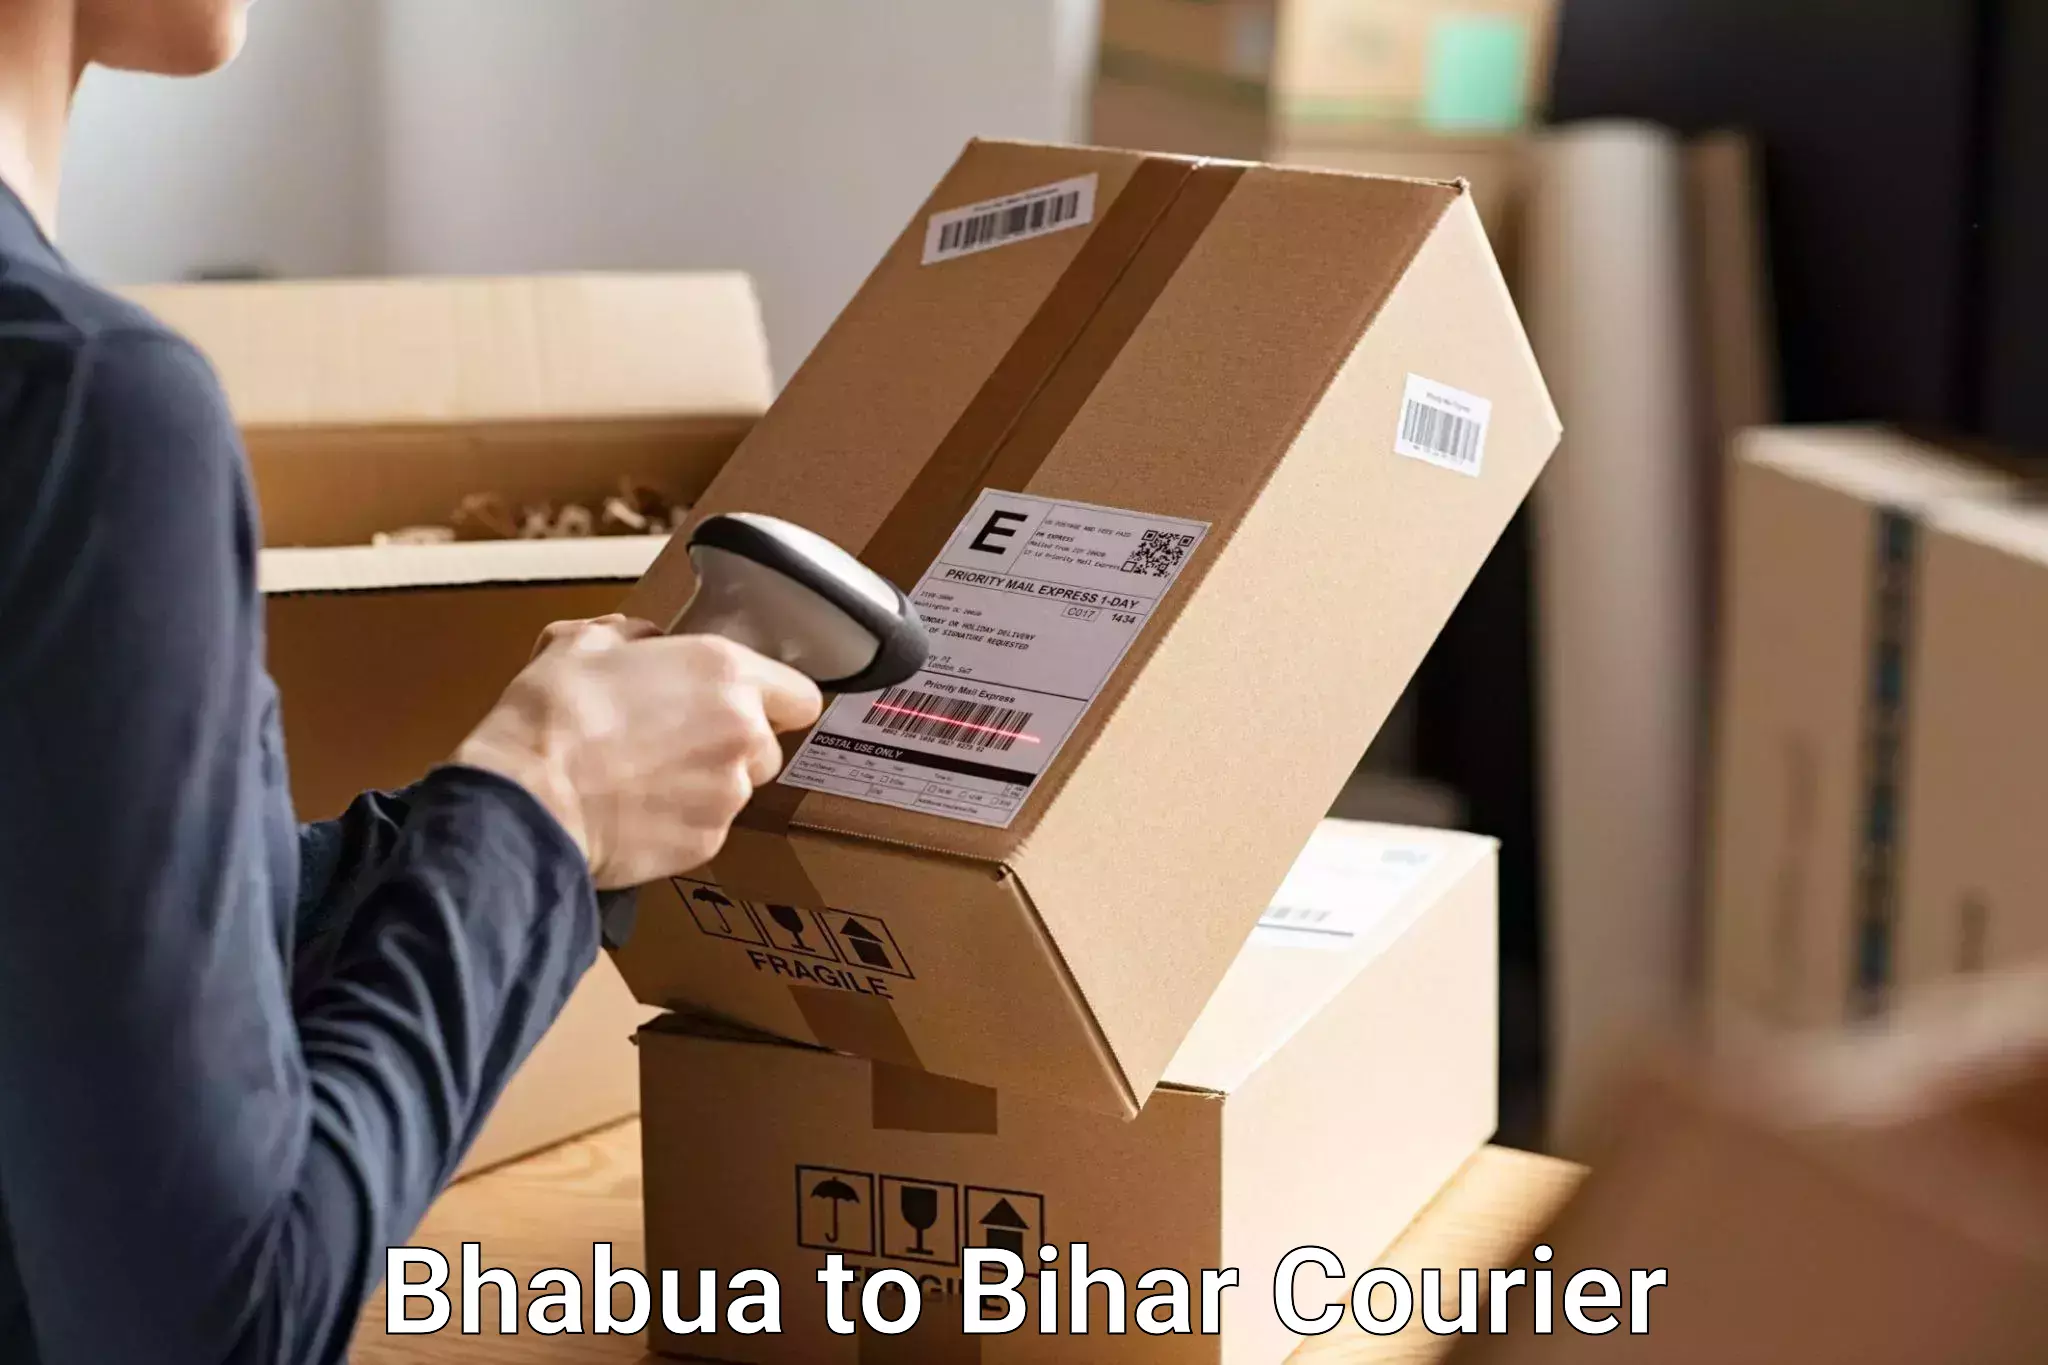 Luggage transport service Bhabua to Gaya